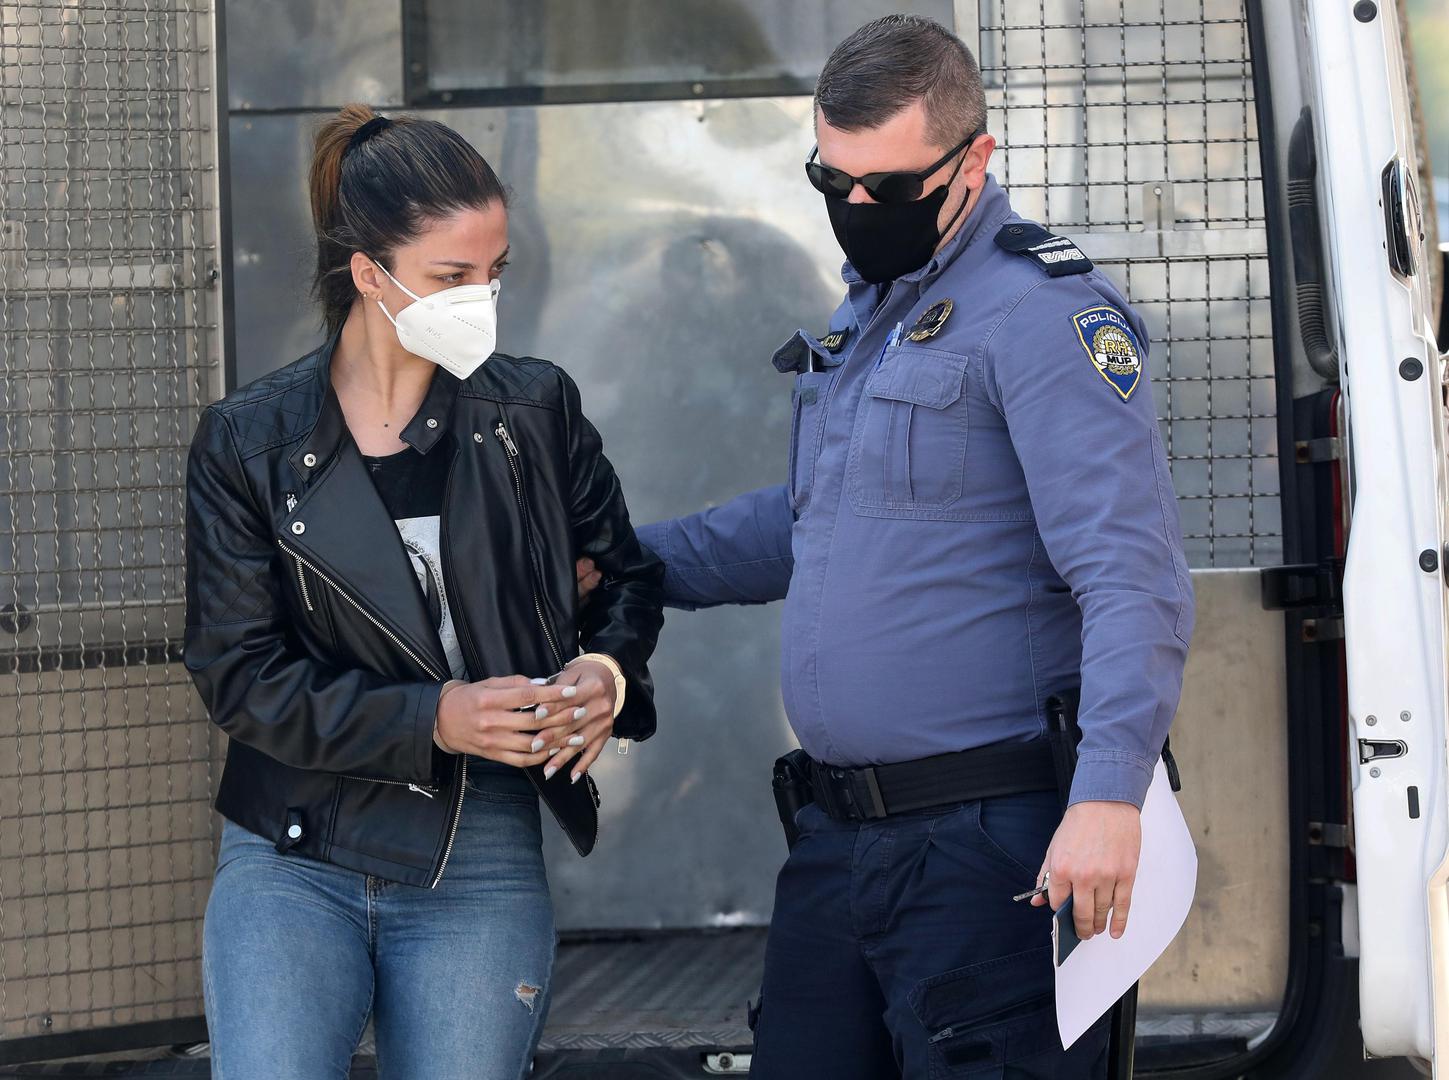 Stigla je 16. listopada avionskim letom iz Sao Paula preko Istanbula na teritorij Republike Hrvatske, a kod nje je, prilikom carinskog nadzora, pronađeno pet paketa kokaina. 